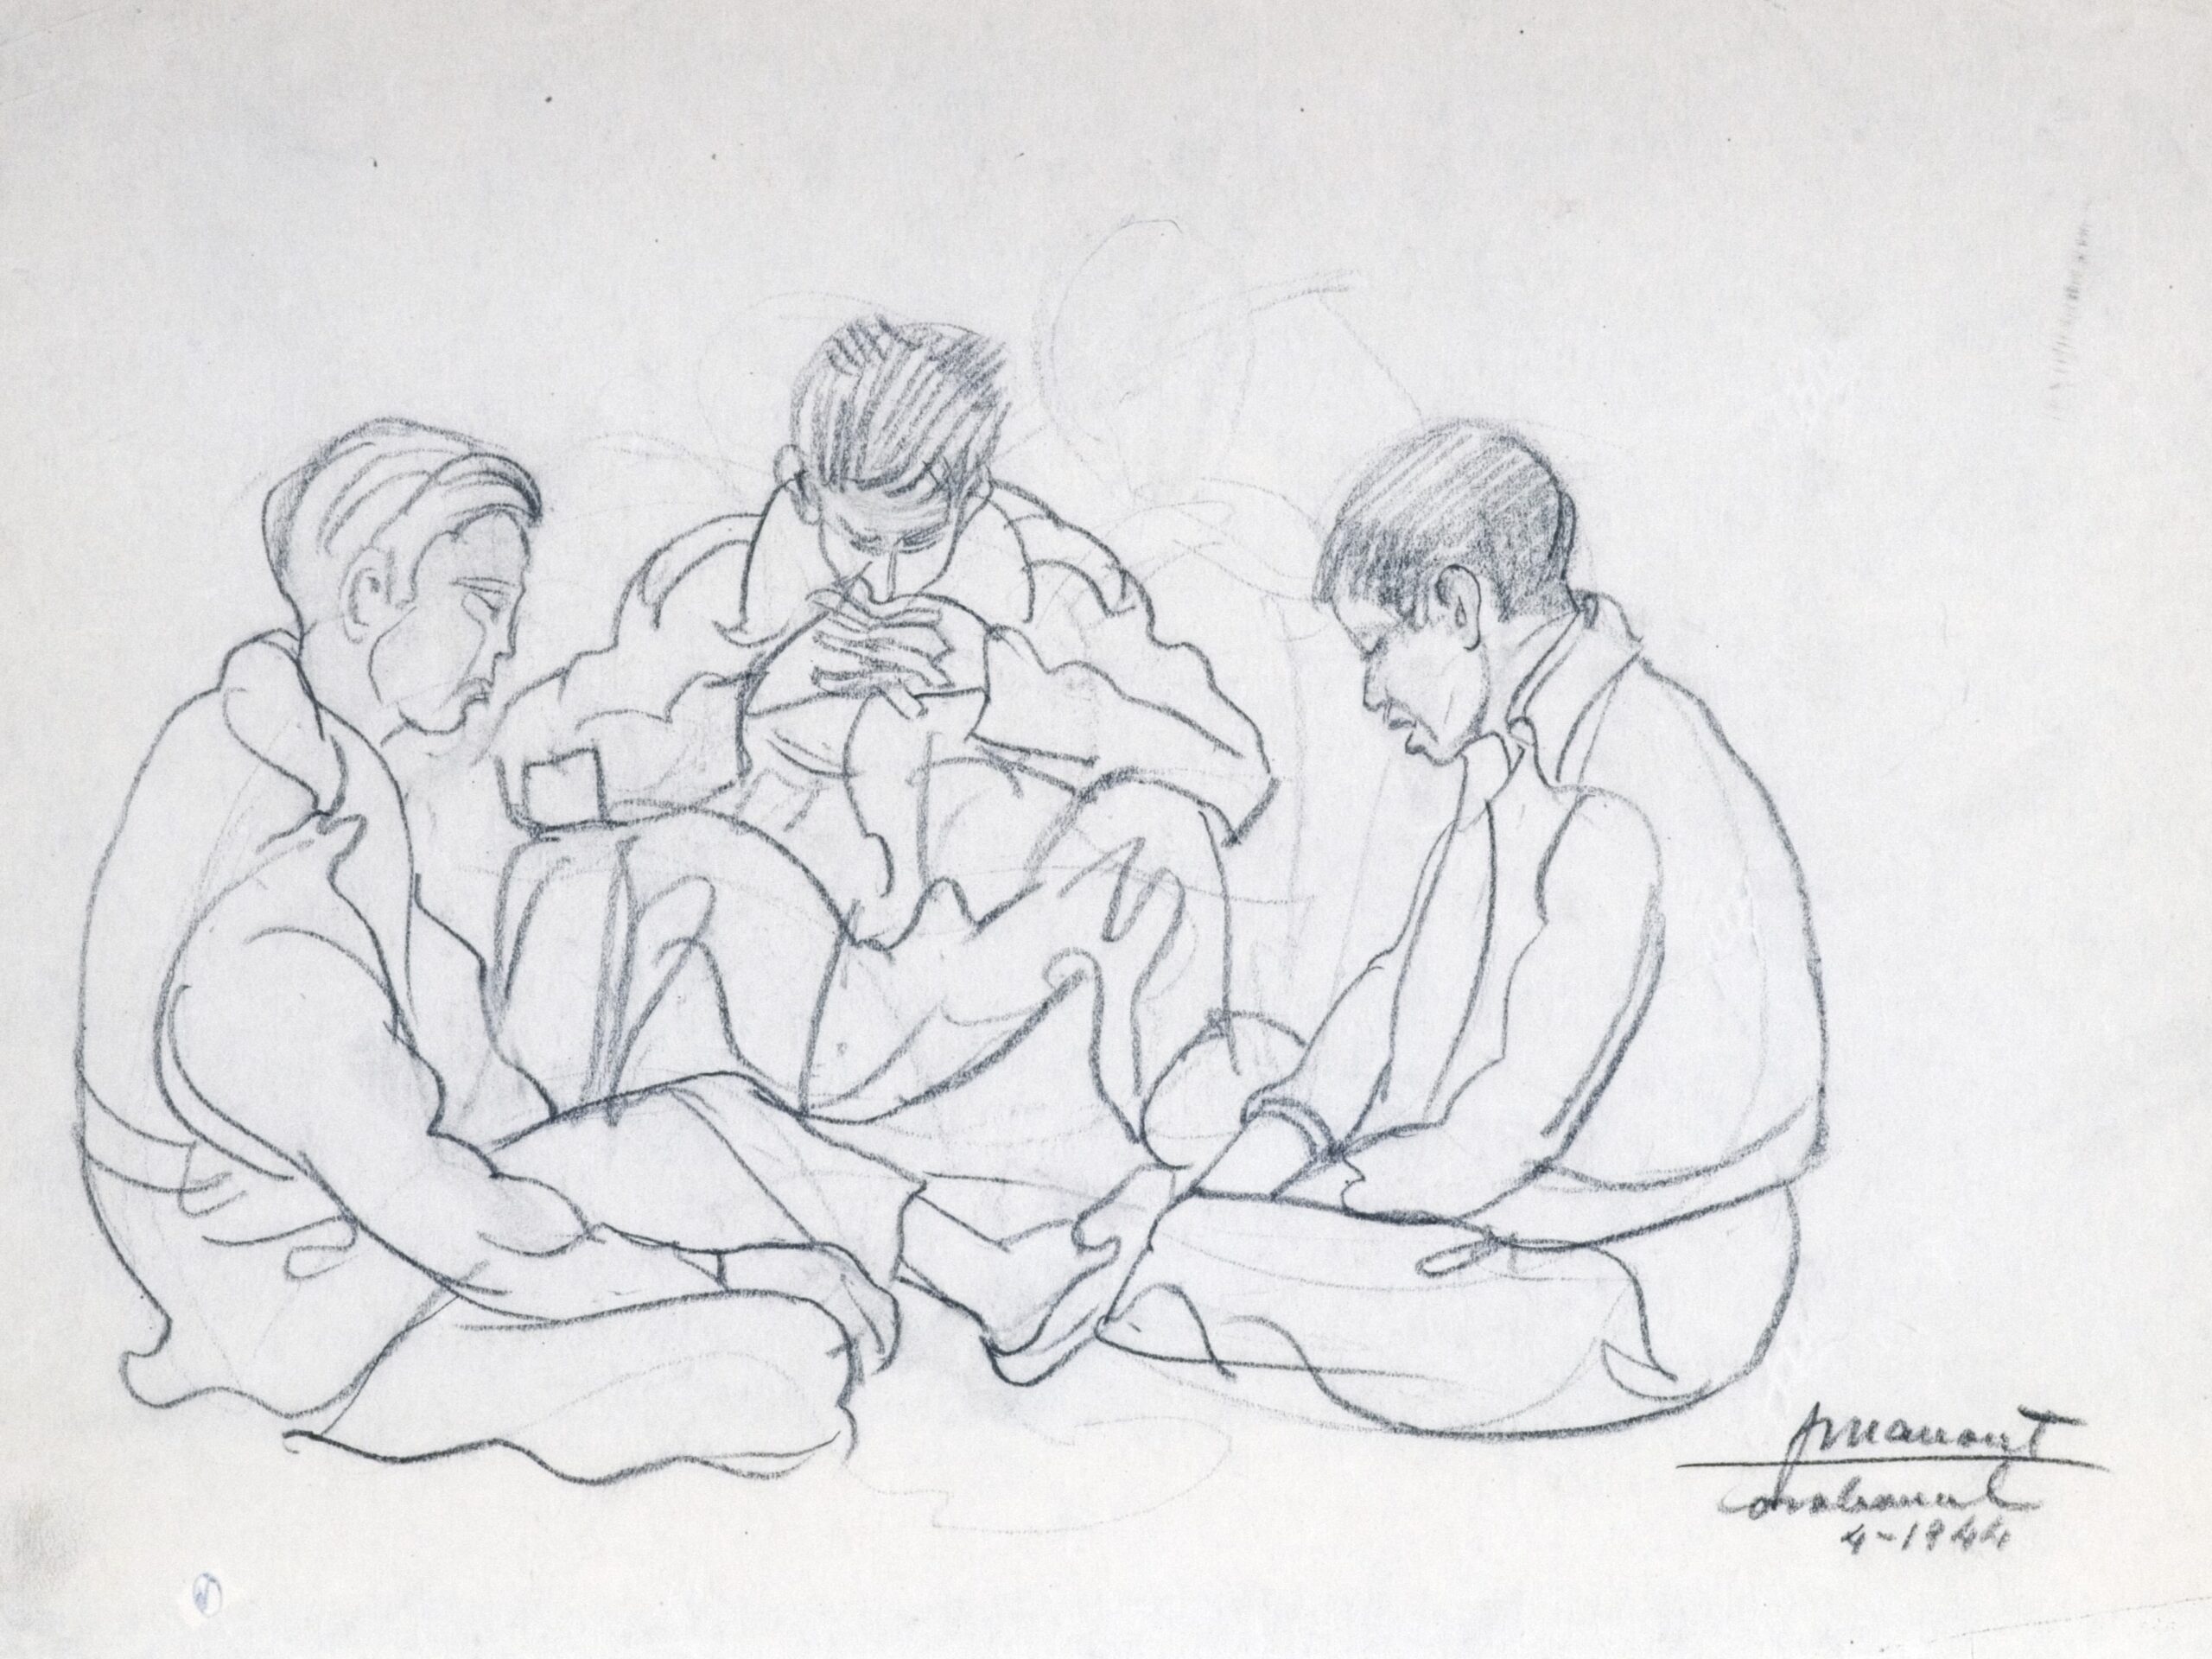 Dibujo de José Manaut titulado Tres muchachos sentados en el suelo, Carabanchel, 1944. Carboncillo sobre papel.